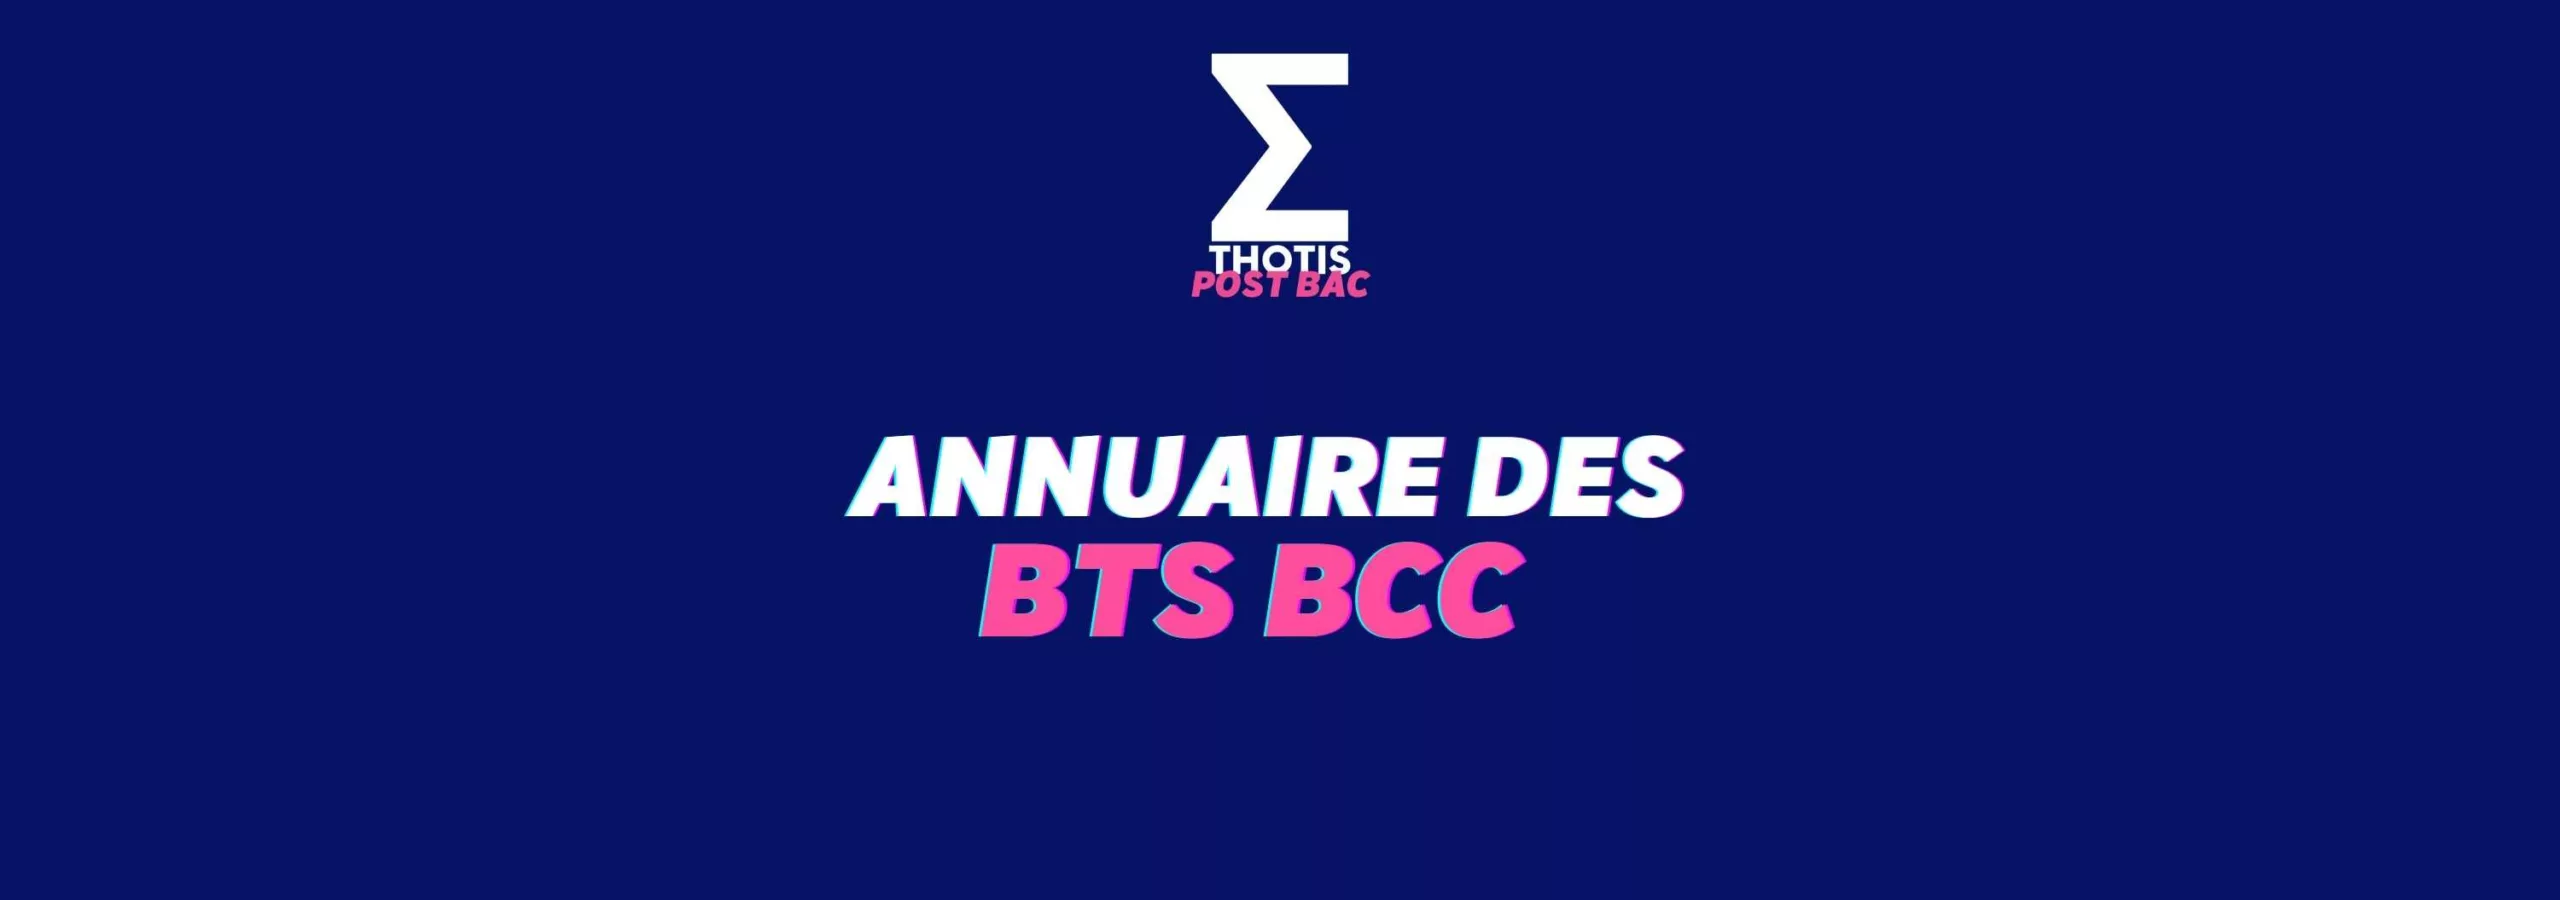 Annuaire des BTS BCC